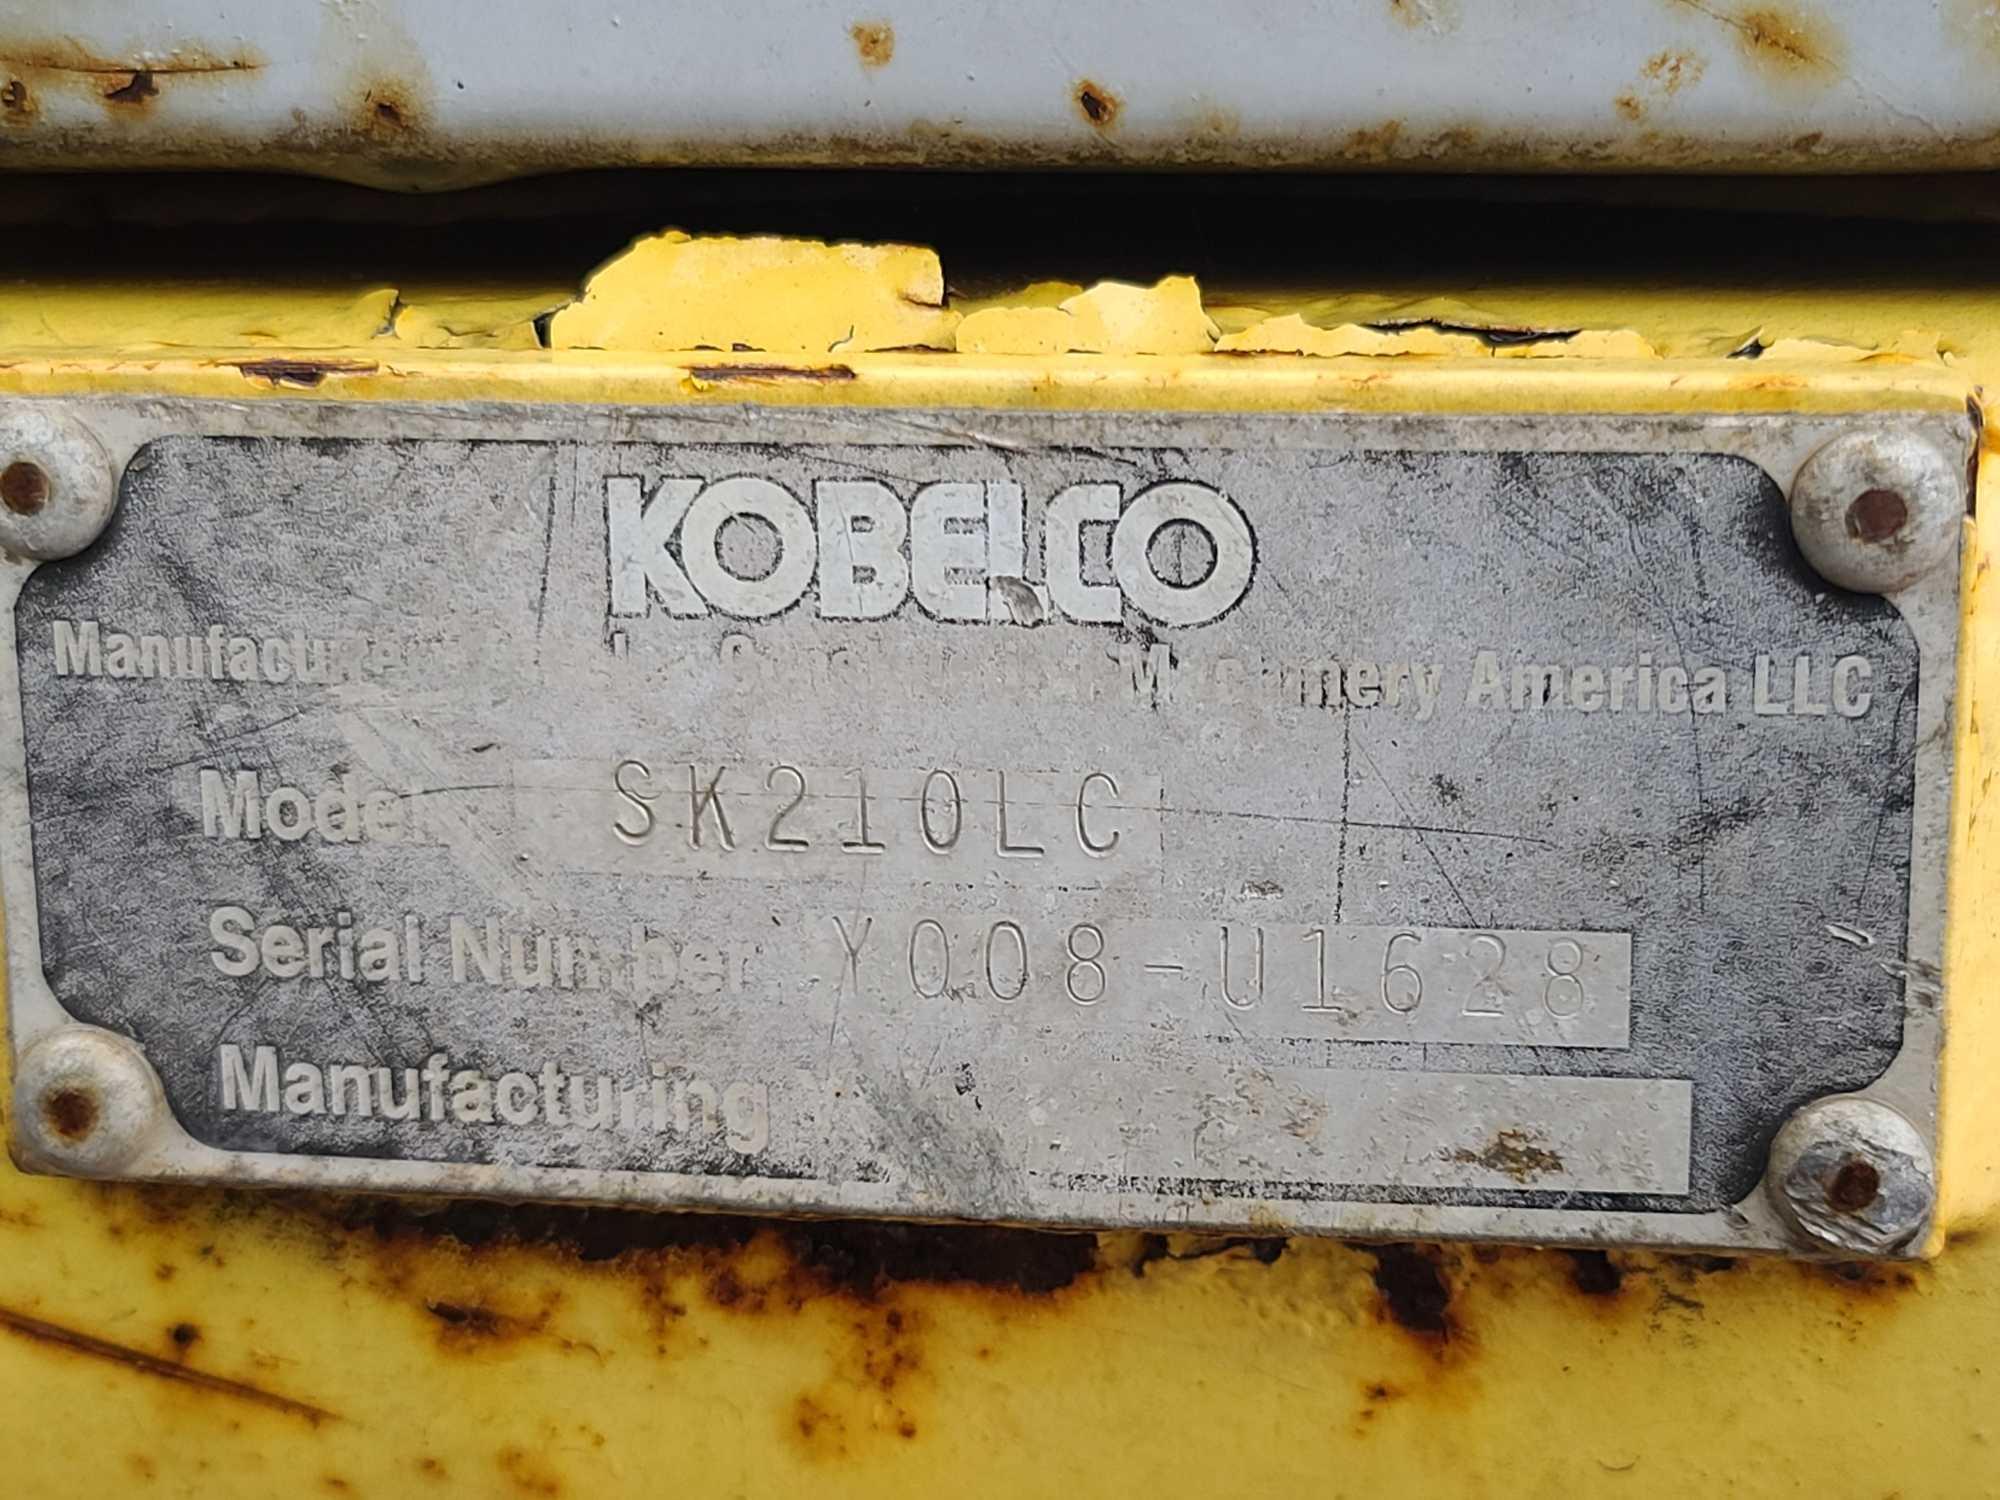 2008 Kobelco Excavator, Model SK210LC, Srl# Y008-U1628